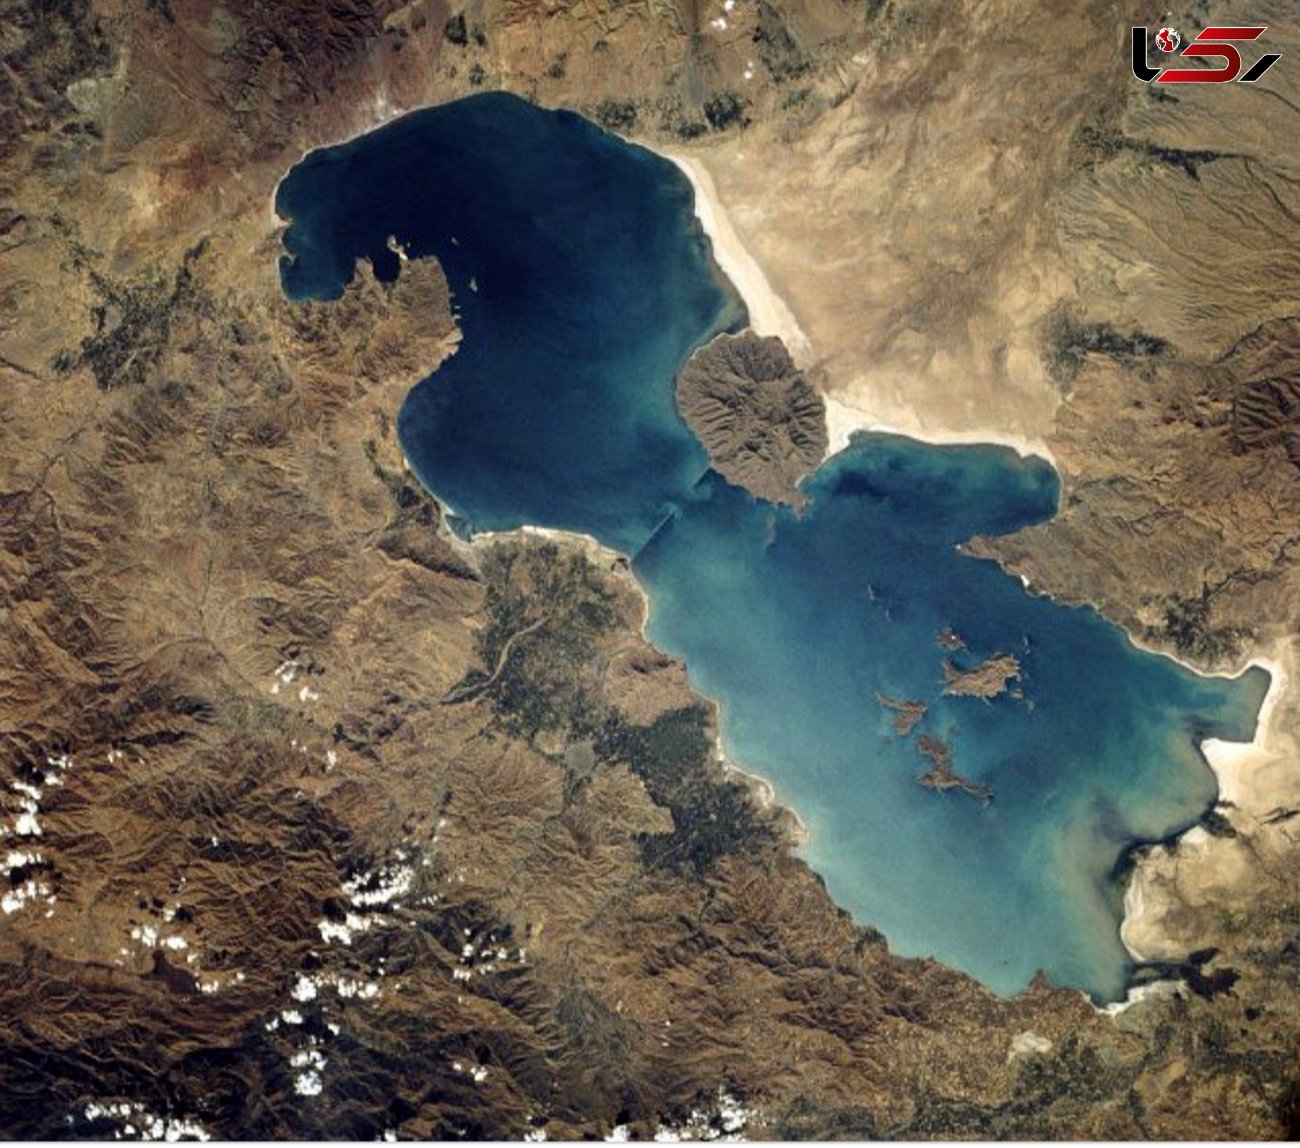 تداوم روند فعلی احیای دریاچه ارومیه با توجه به برنامه مکمل
